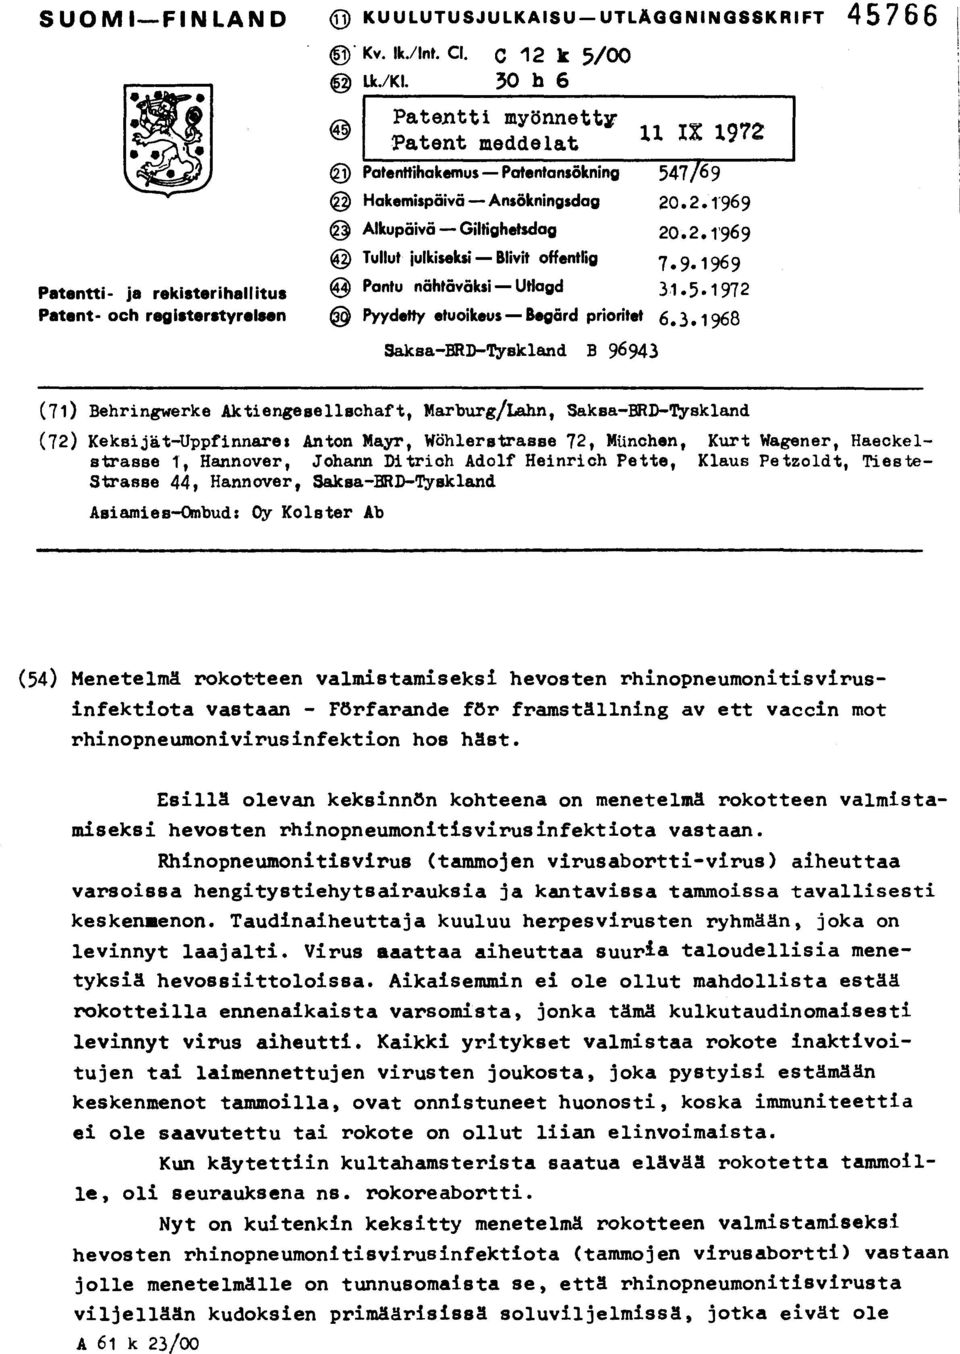 9.1969 Patentti- ja rekisterihallitus Patent- och registerstyrelsen @ Pantu nähtäväksi Utlagd 31